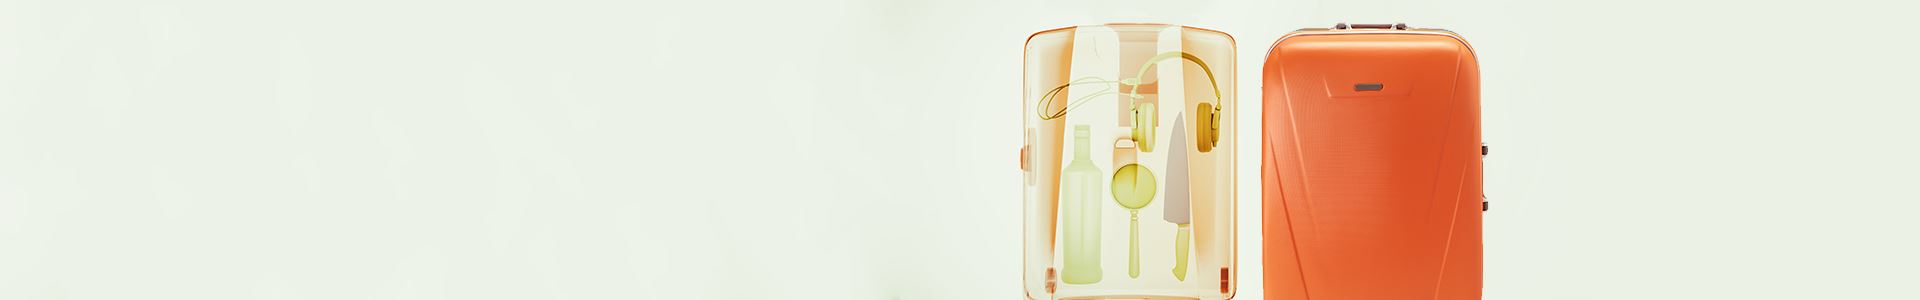 Foto de uma mala com rodas de cor laranja com um raio-x do seu interior no lado esquerdo. O raio X mostra vários itens: uma faca, um fone de ouvido, uma garrafa e uma lupa.